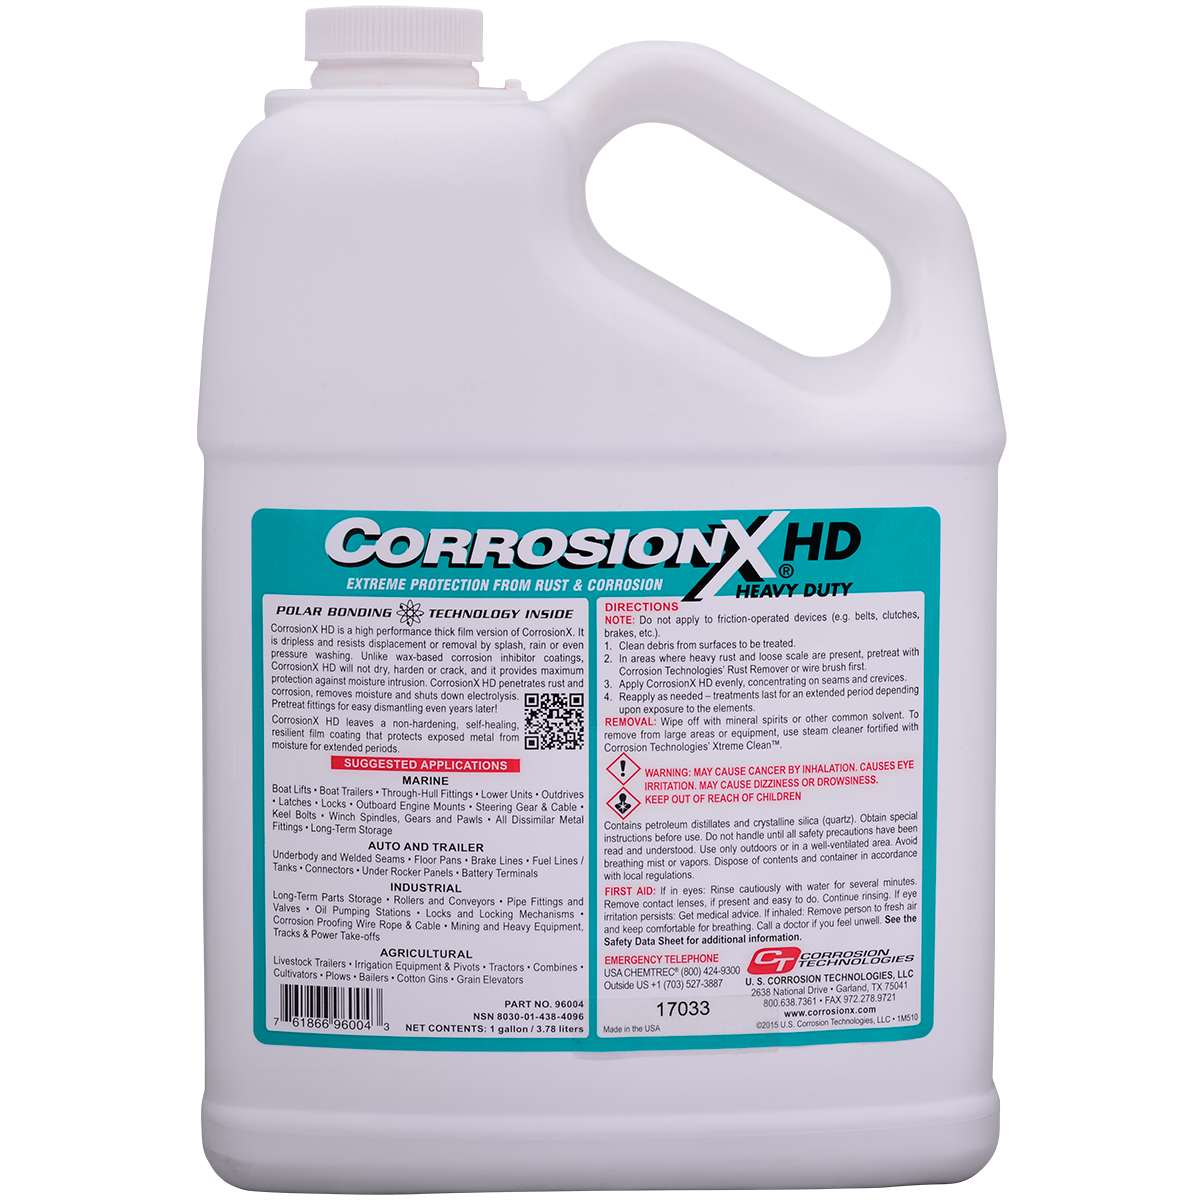 CorrosionX Heavy Duty